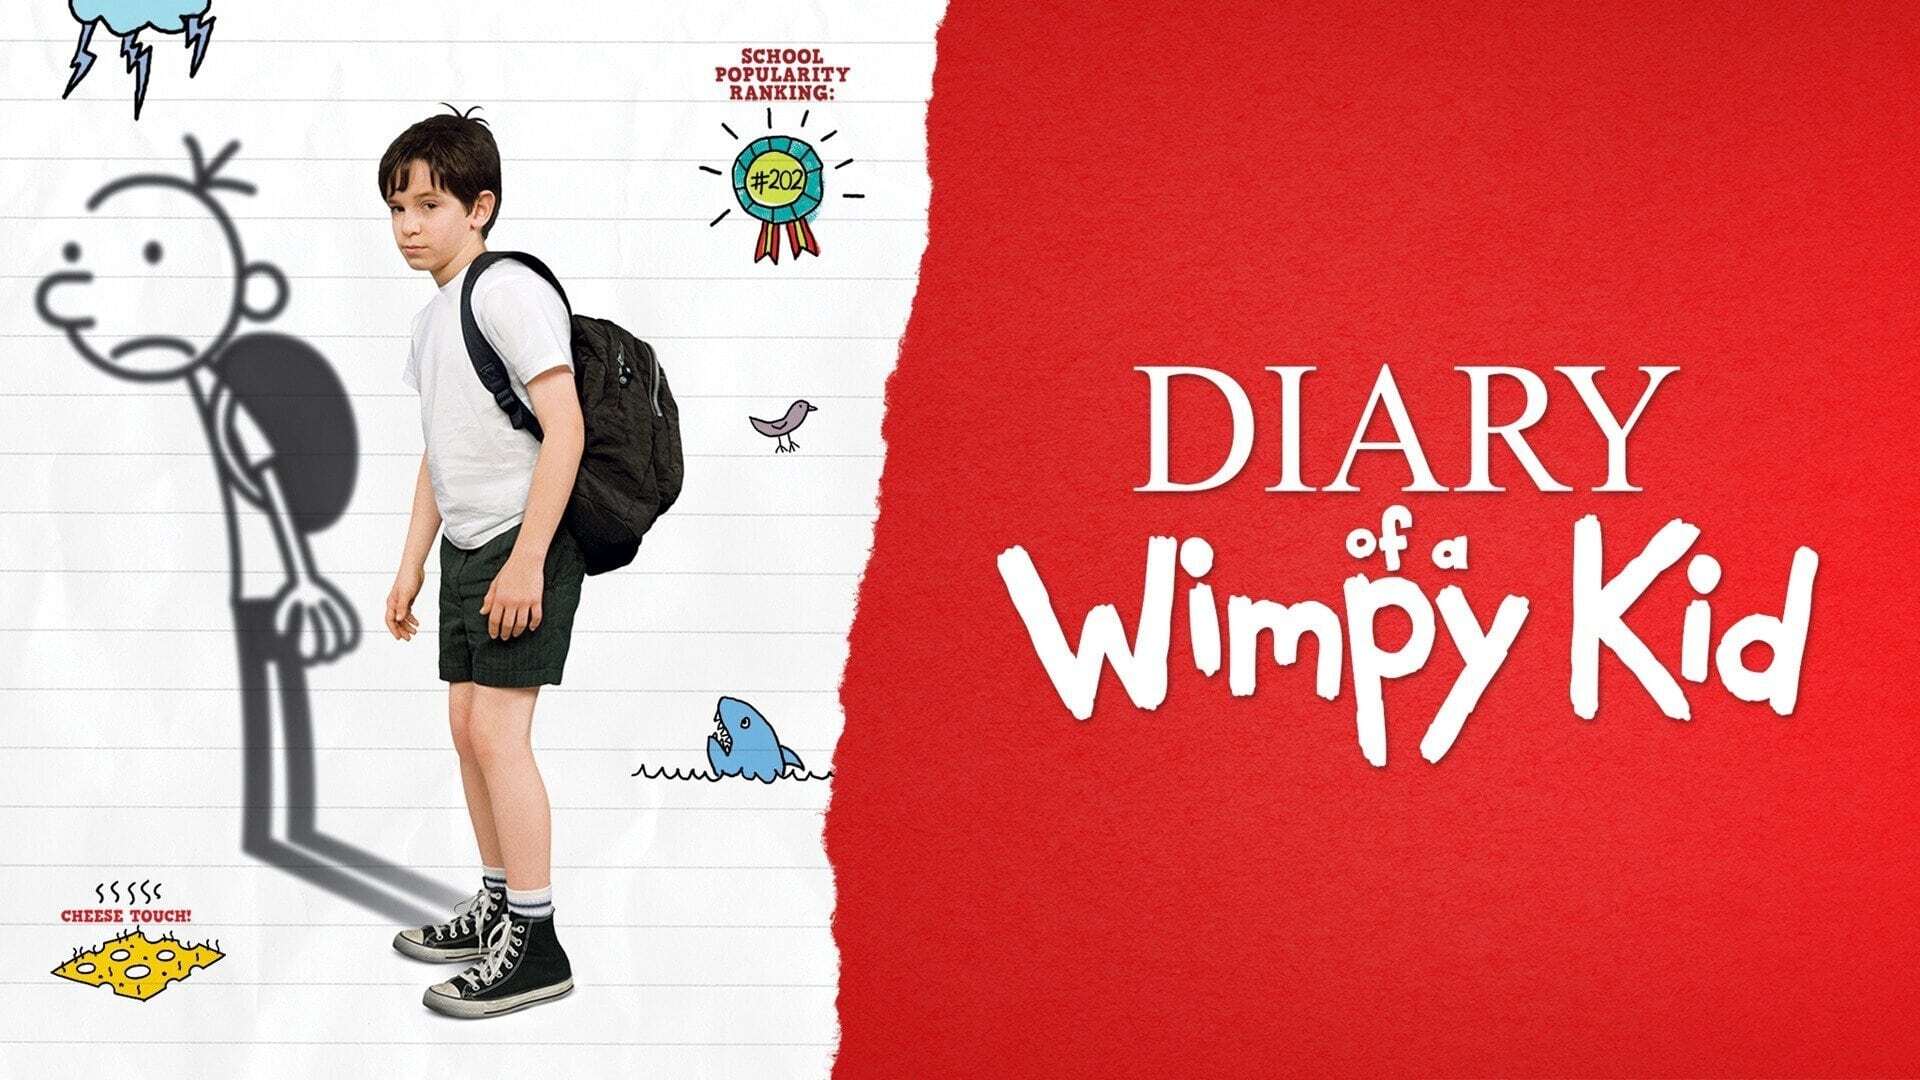 წრიპა ბიჭის დღიური / Diary of a Wimpy Kid